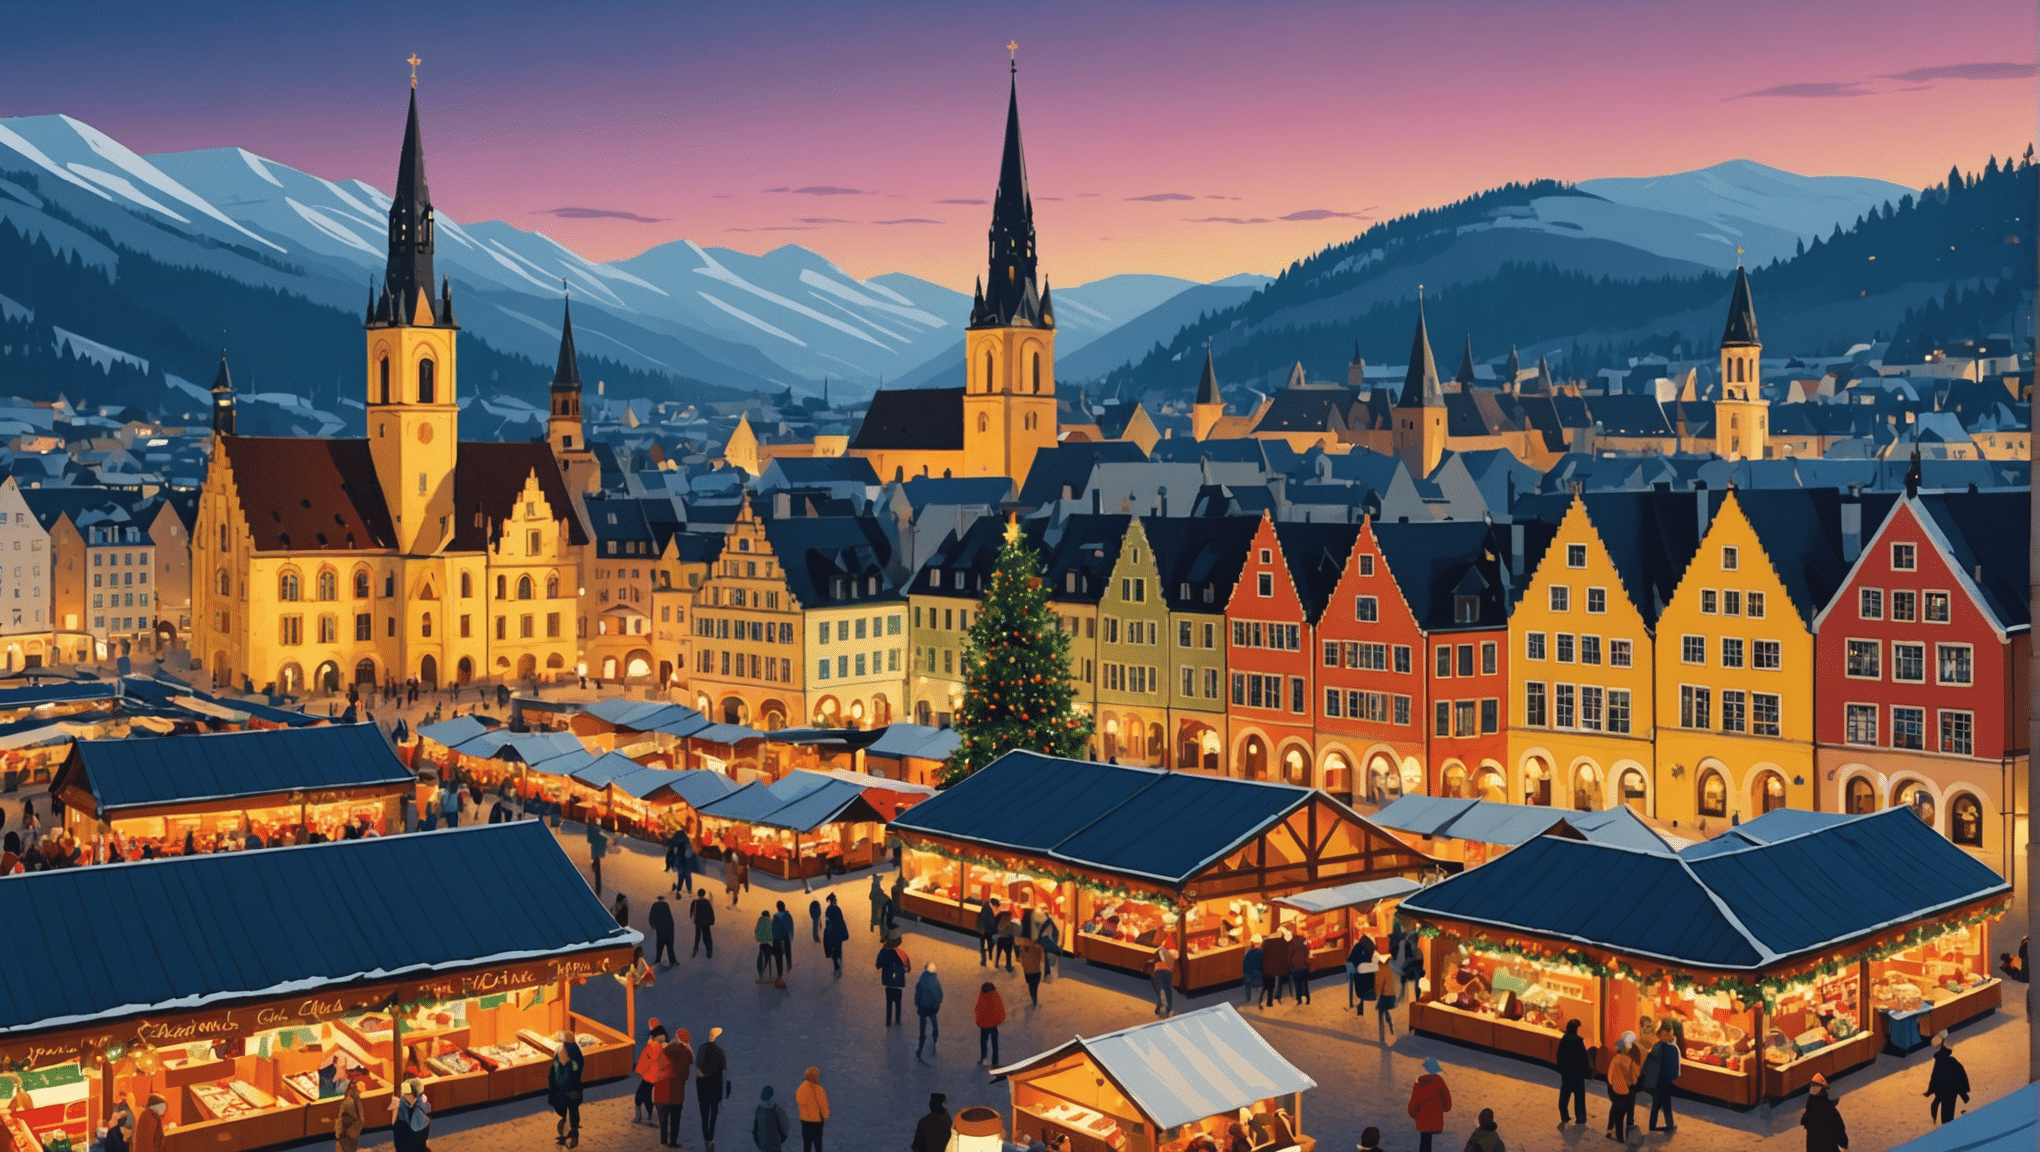 ヨーロッパで最も素晴らしいクリスマス マーケットを訪れ、イルミネーション、グルメ、伝統工芸品など、季節の魔法に浸ってください。